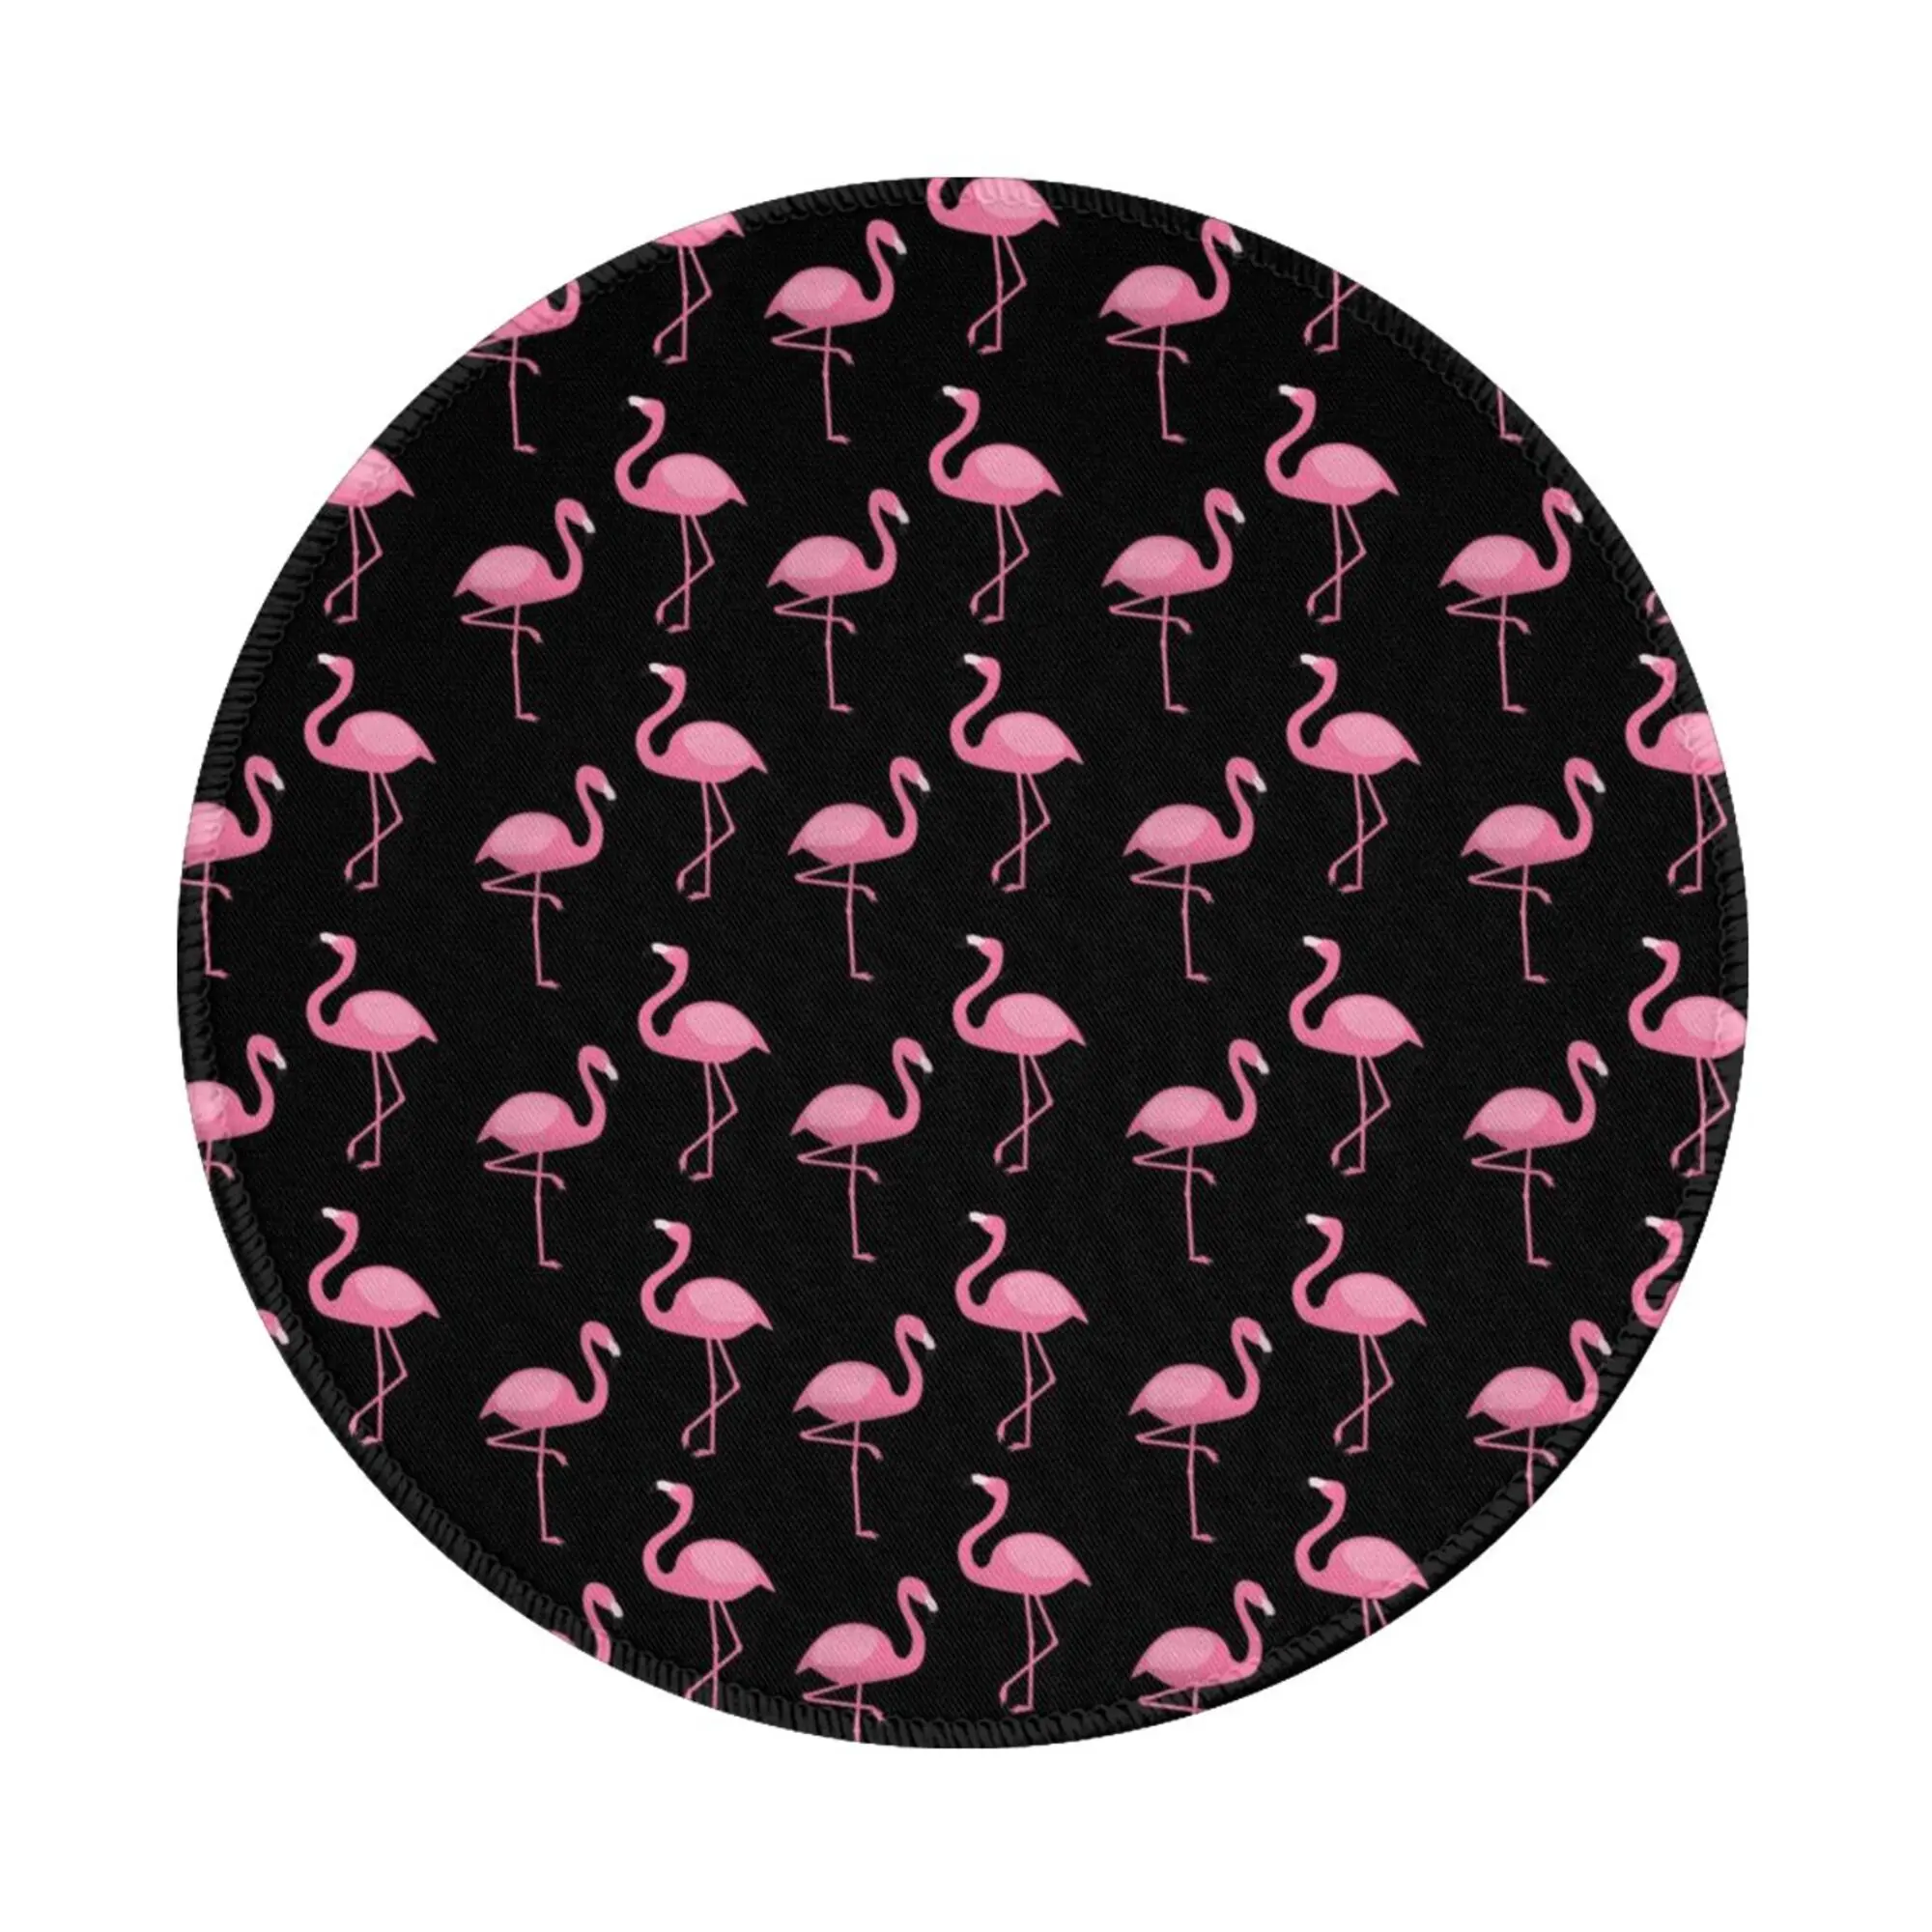 Pink Flamingo de Equipo de Oficina de la alfombrilla de Ratón Personalizada Antideslizante de alfombrillas para el Ratón del ordenador Portátil Redondo de 8 pulgadas 2 PCS . ' - ' . 0